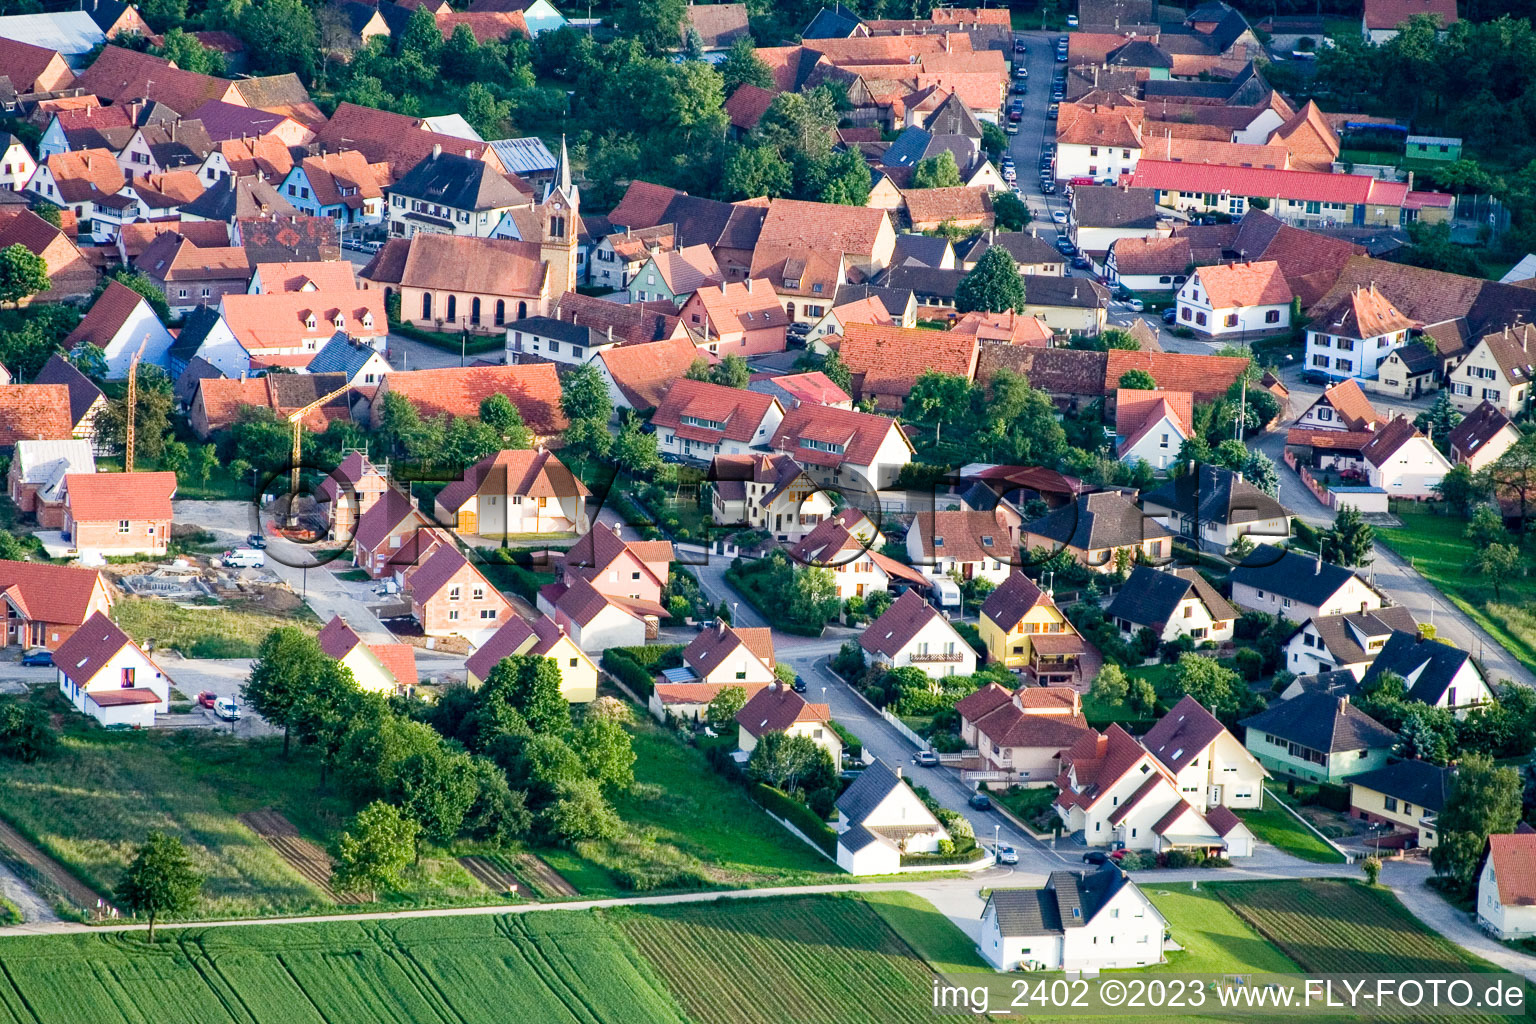 Vue aérienne de Schaffhouse près de Seltz à Schaffhouse-près-Seltz dans le département Bas Rhin, France